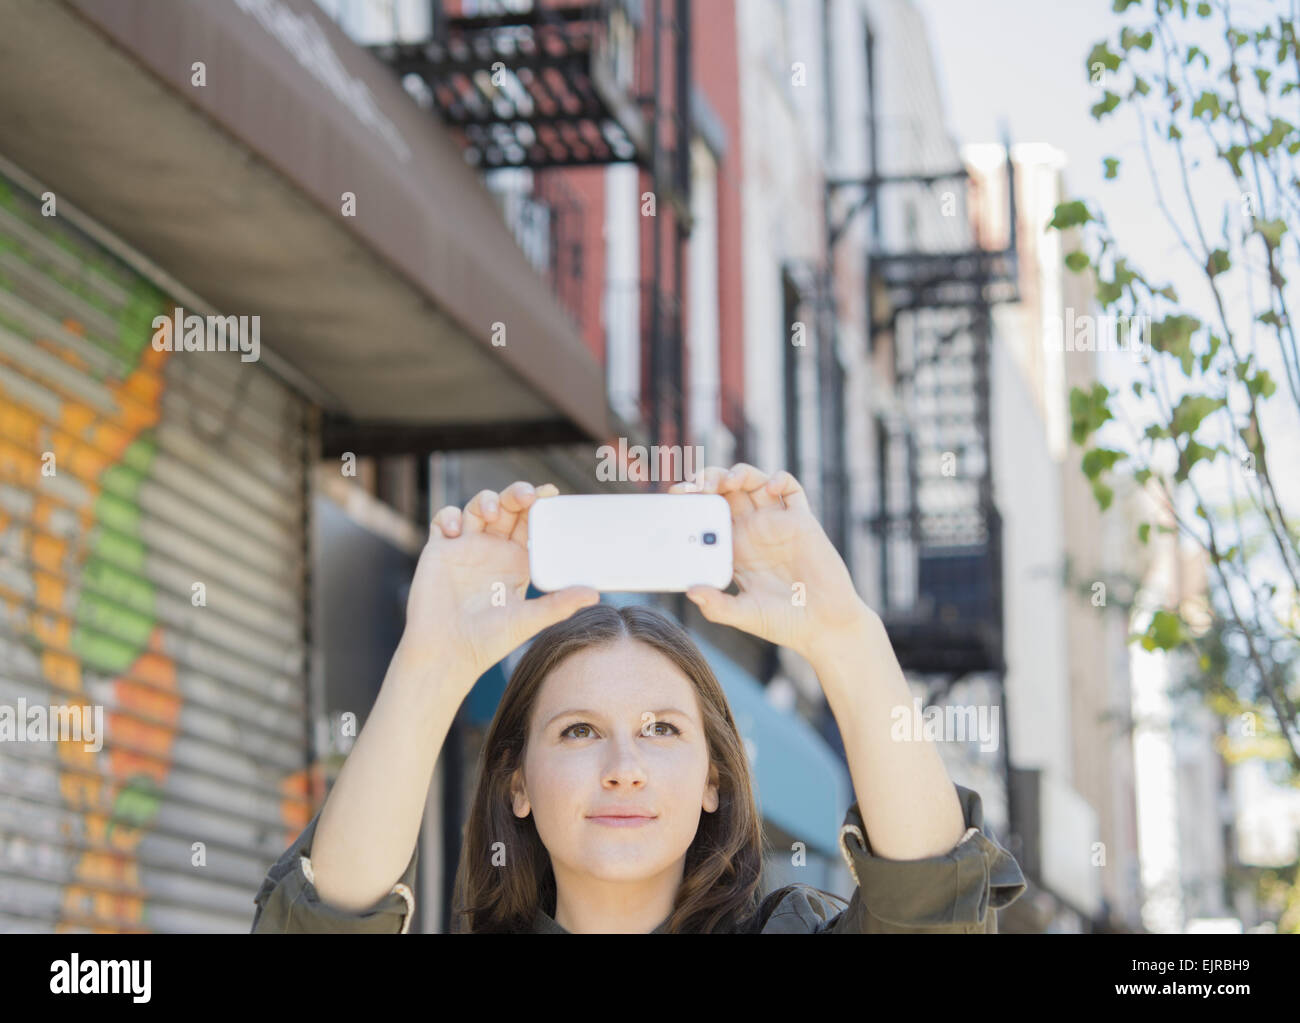 La donna caucasica tenendo il telefono cellulare la fotografia sul marciapiede urbano Foto Stock